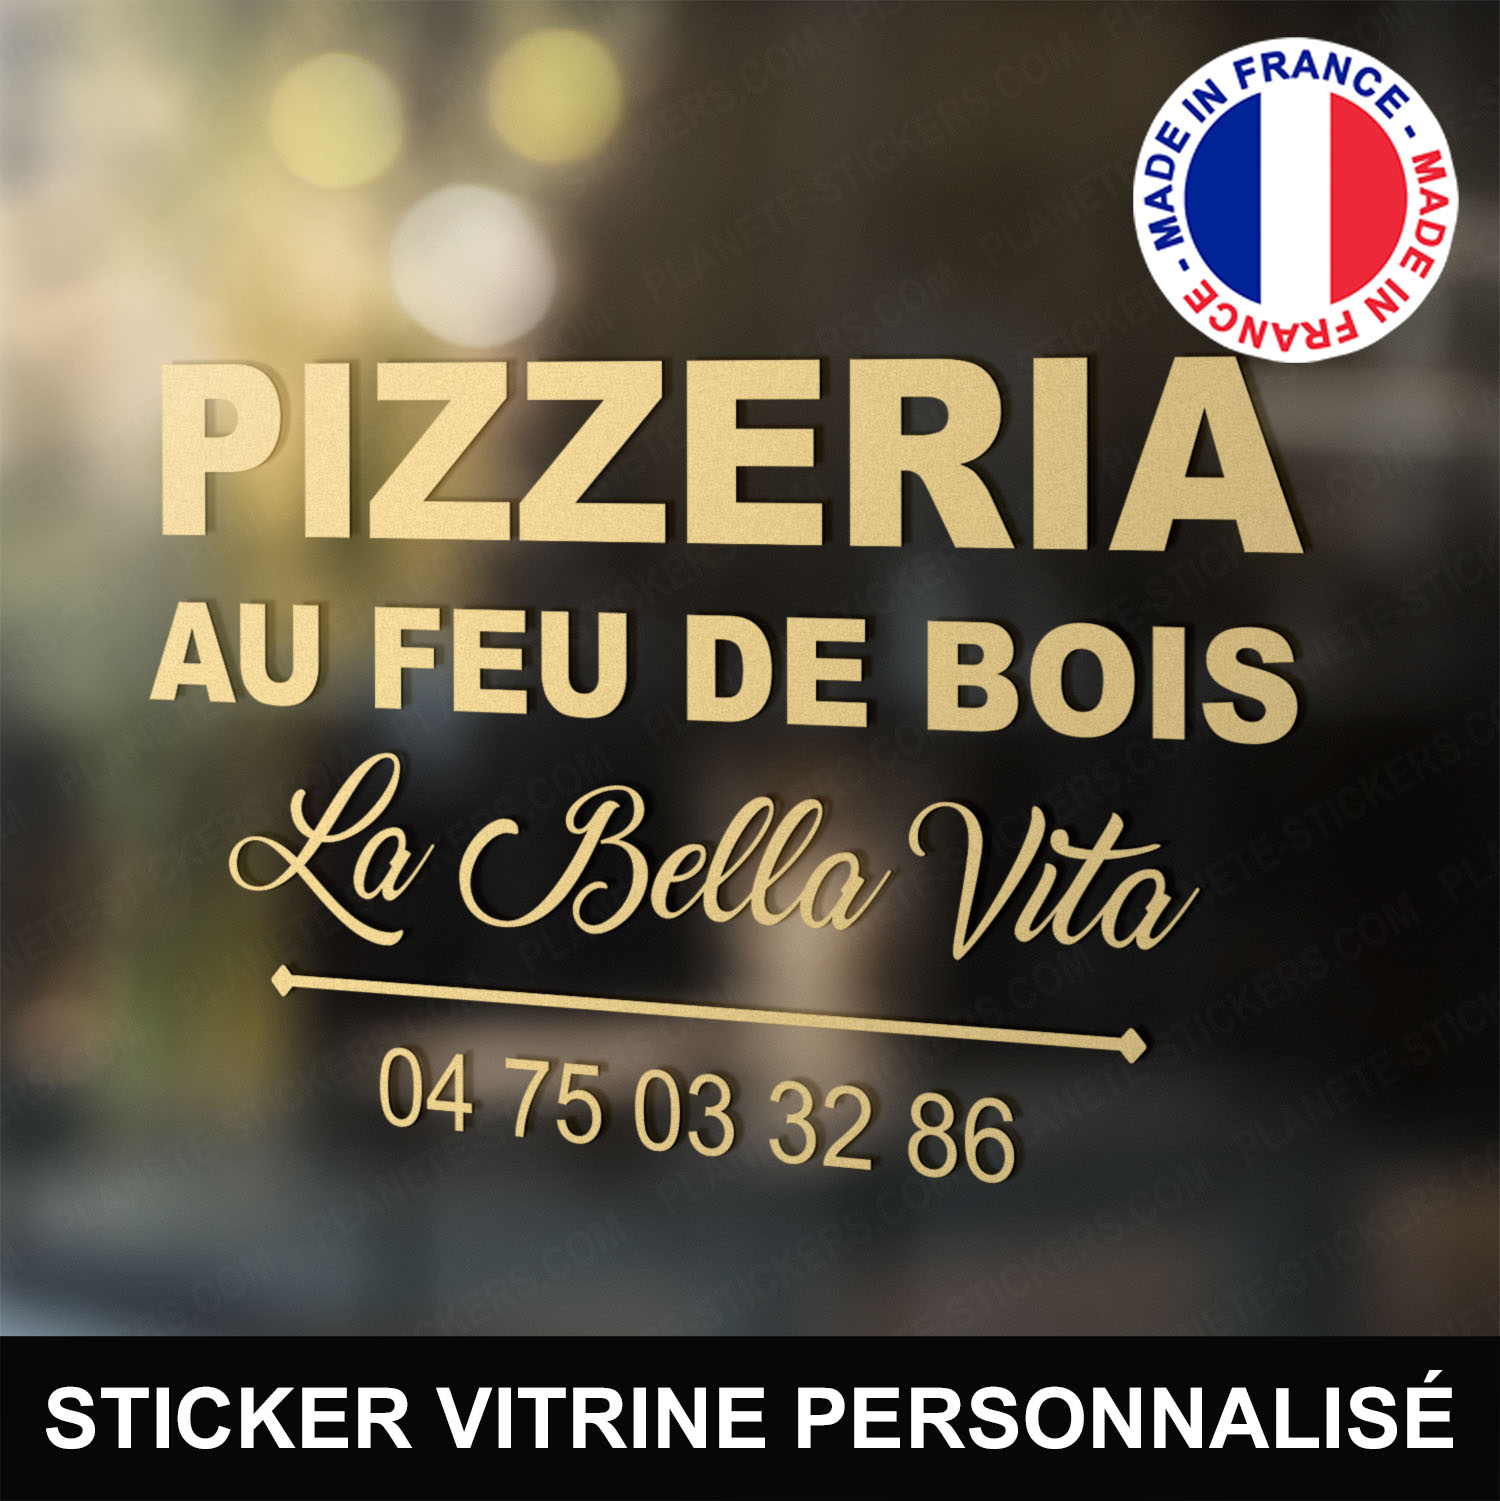 ref32pizzeriavitrine-stickers-pizzeria-au-feu-de-bois-vitrine-pizza-restaurant-sticker-personnalisé-autocollant-pro-restaurateur-vitre-resto-professionnel-logo-écriture